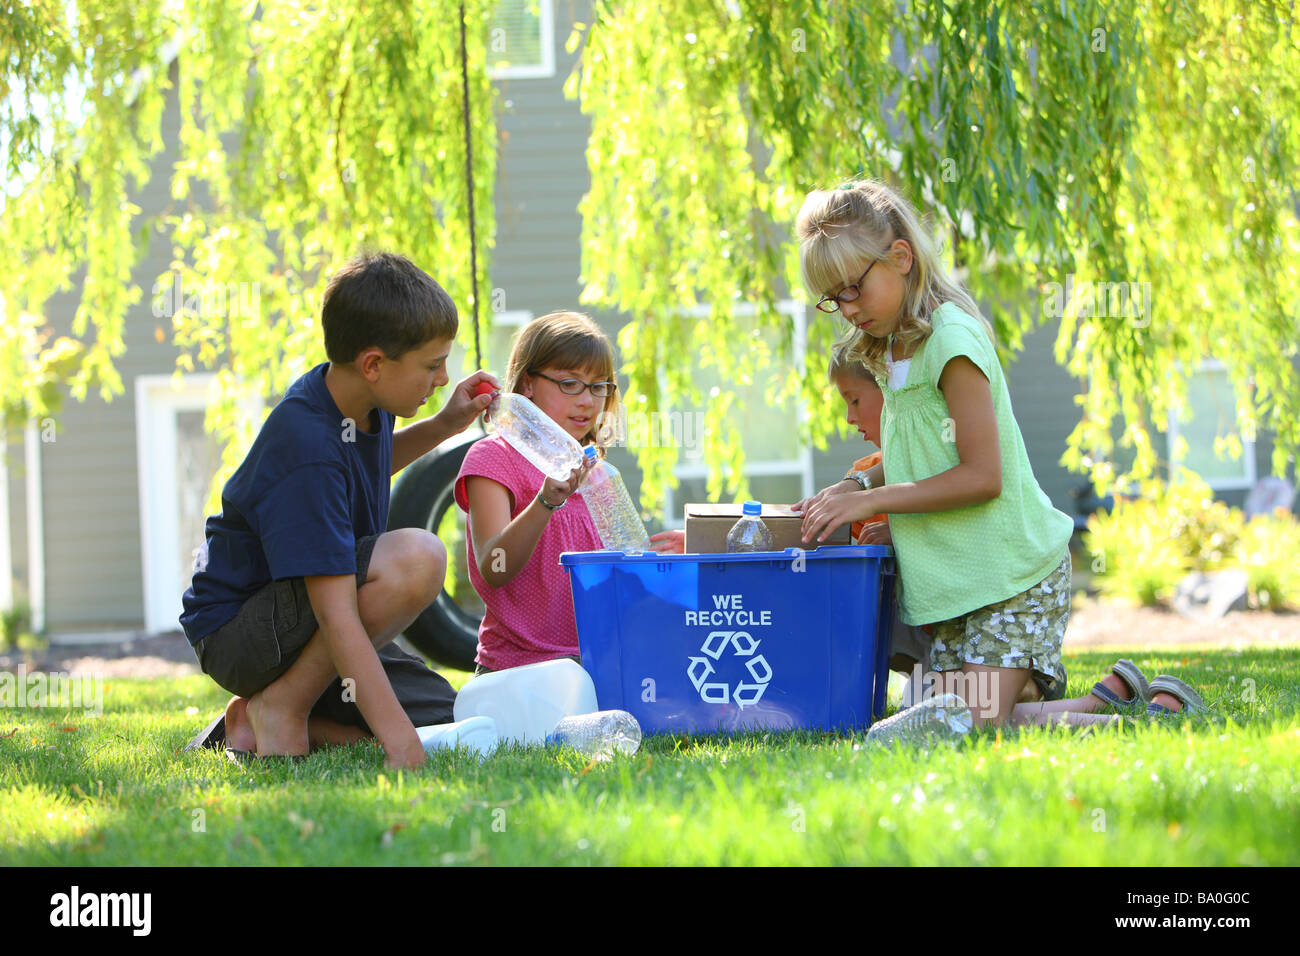 Grupo de niños al aire libre con papelera de reciclaje Foto de stock